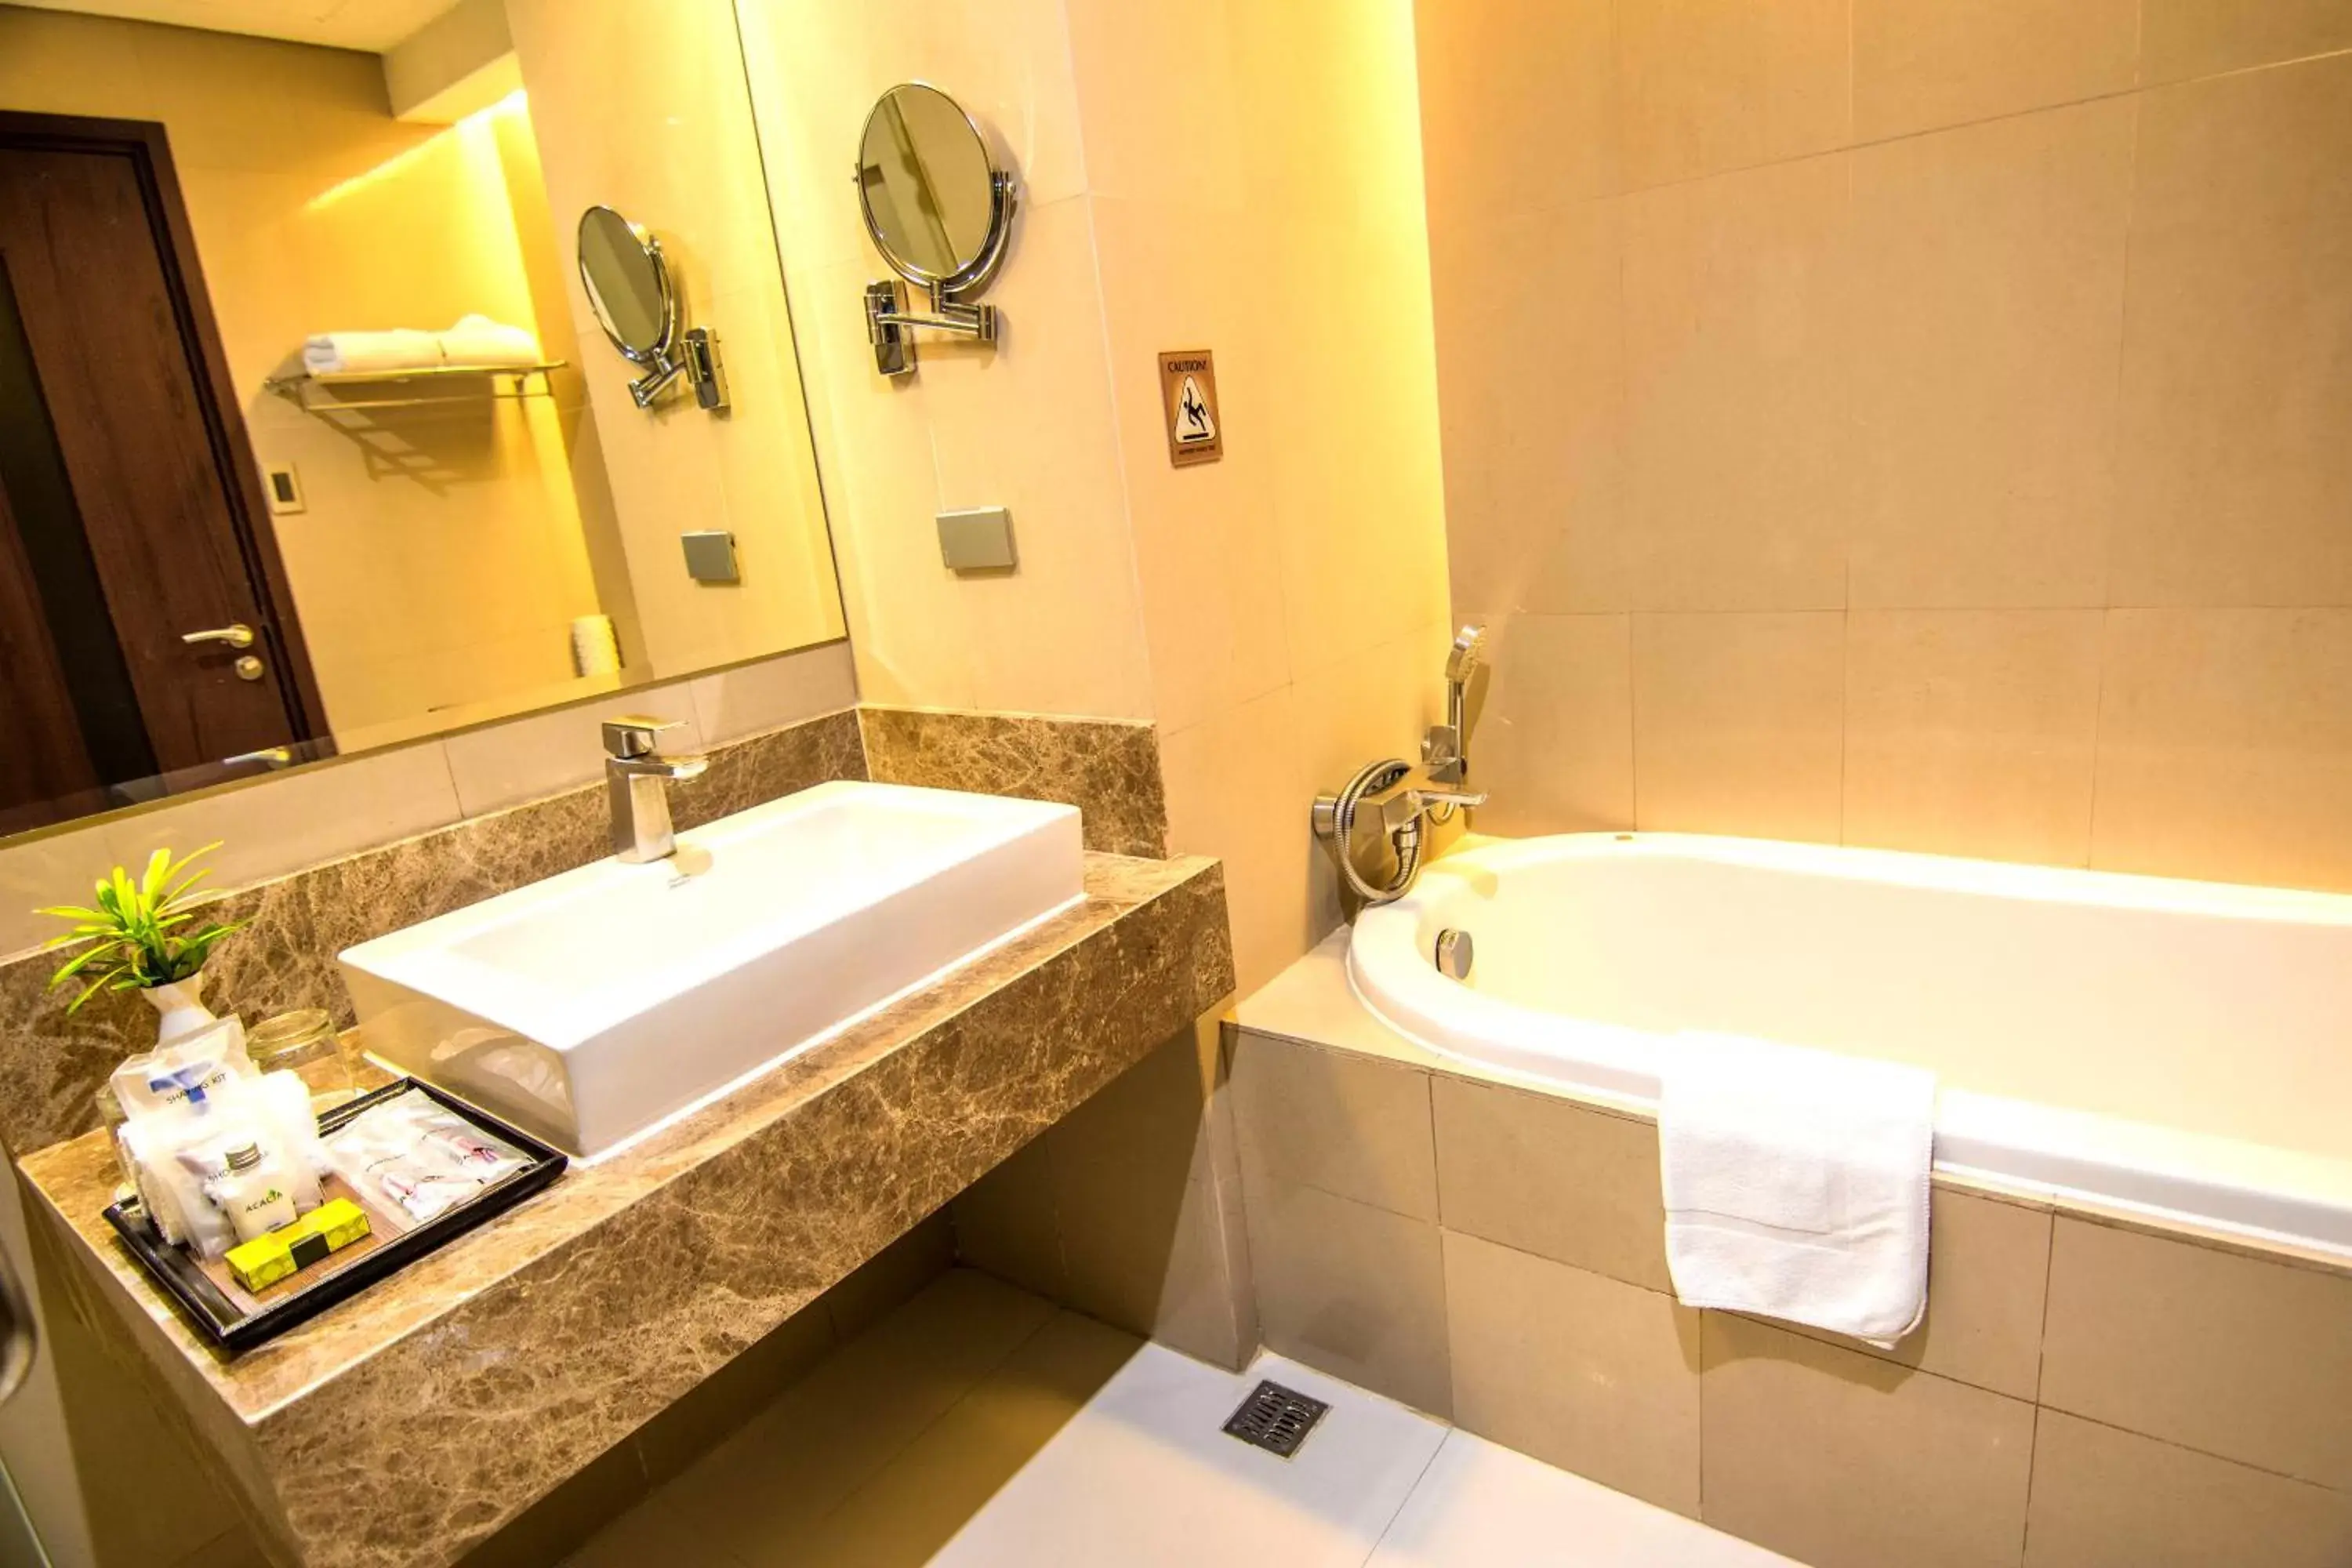 Bathroom in Acacia Hotel Manila - Multiple Use Hotel